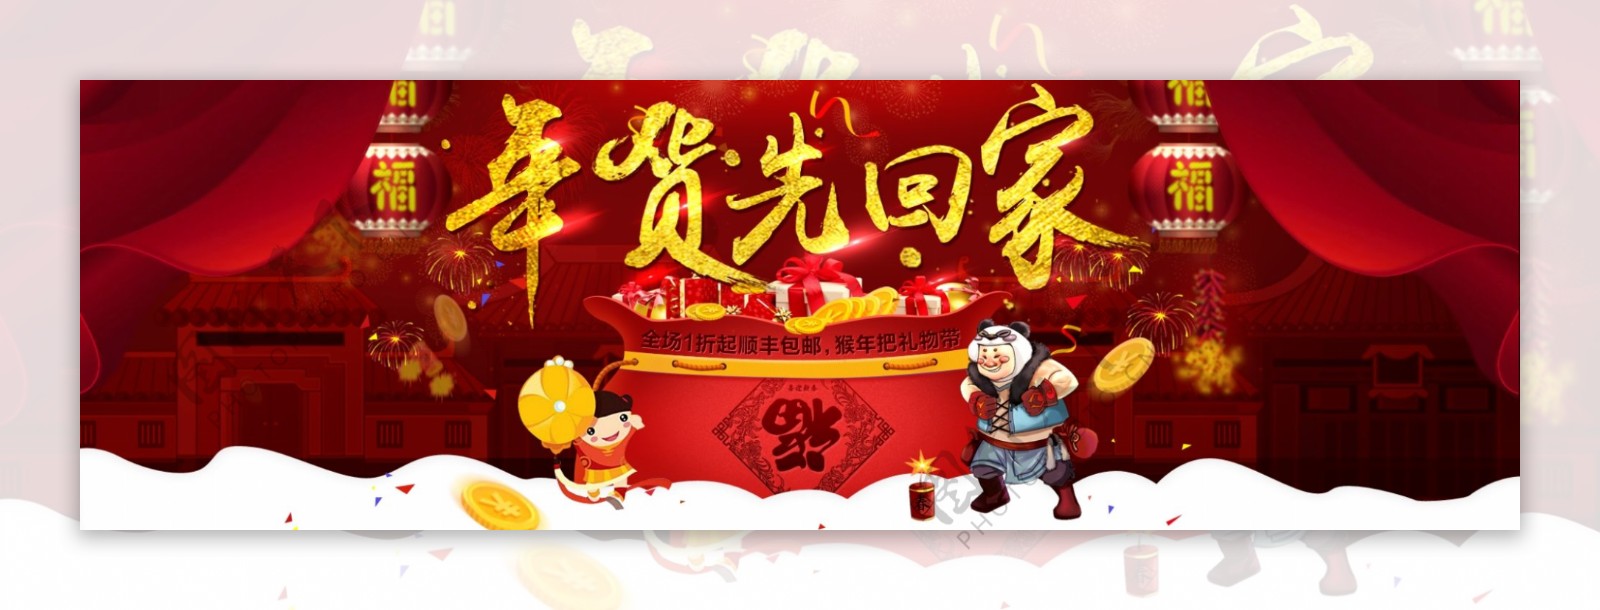 淘宝天猫新年春节年货节元宵节活动海报模板